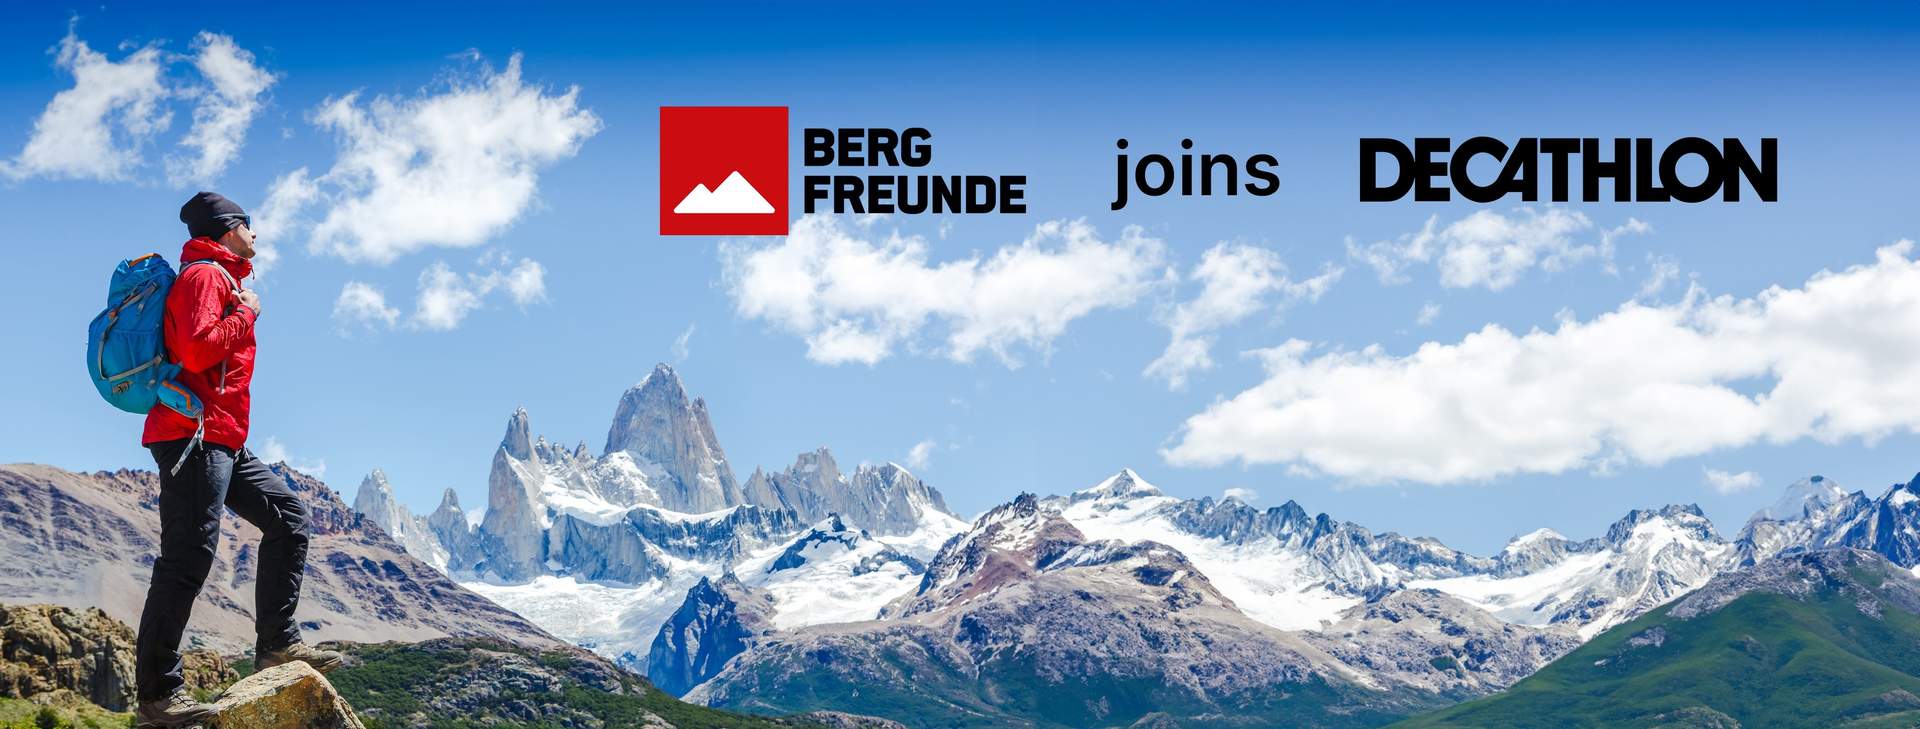 Decathlon completa la adquisición de Bergfreunde, la web especializada en deportes de montaña